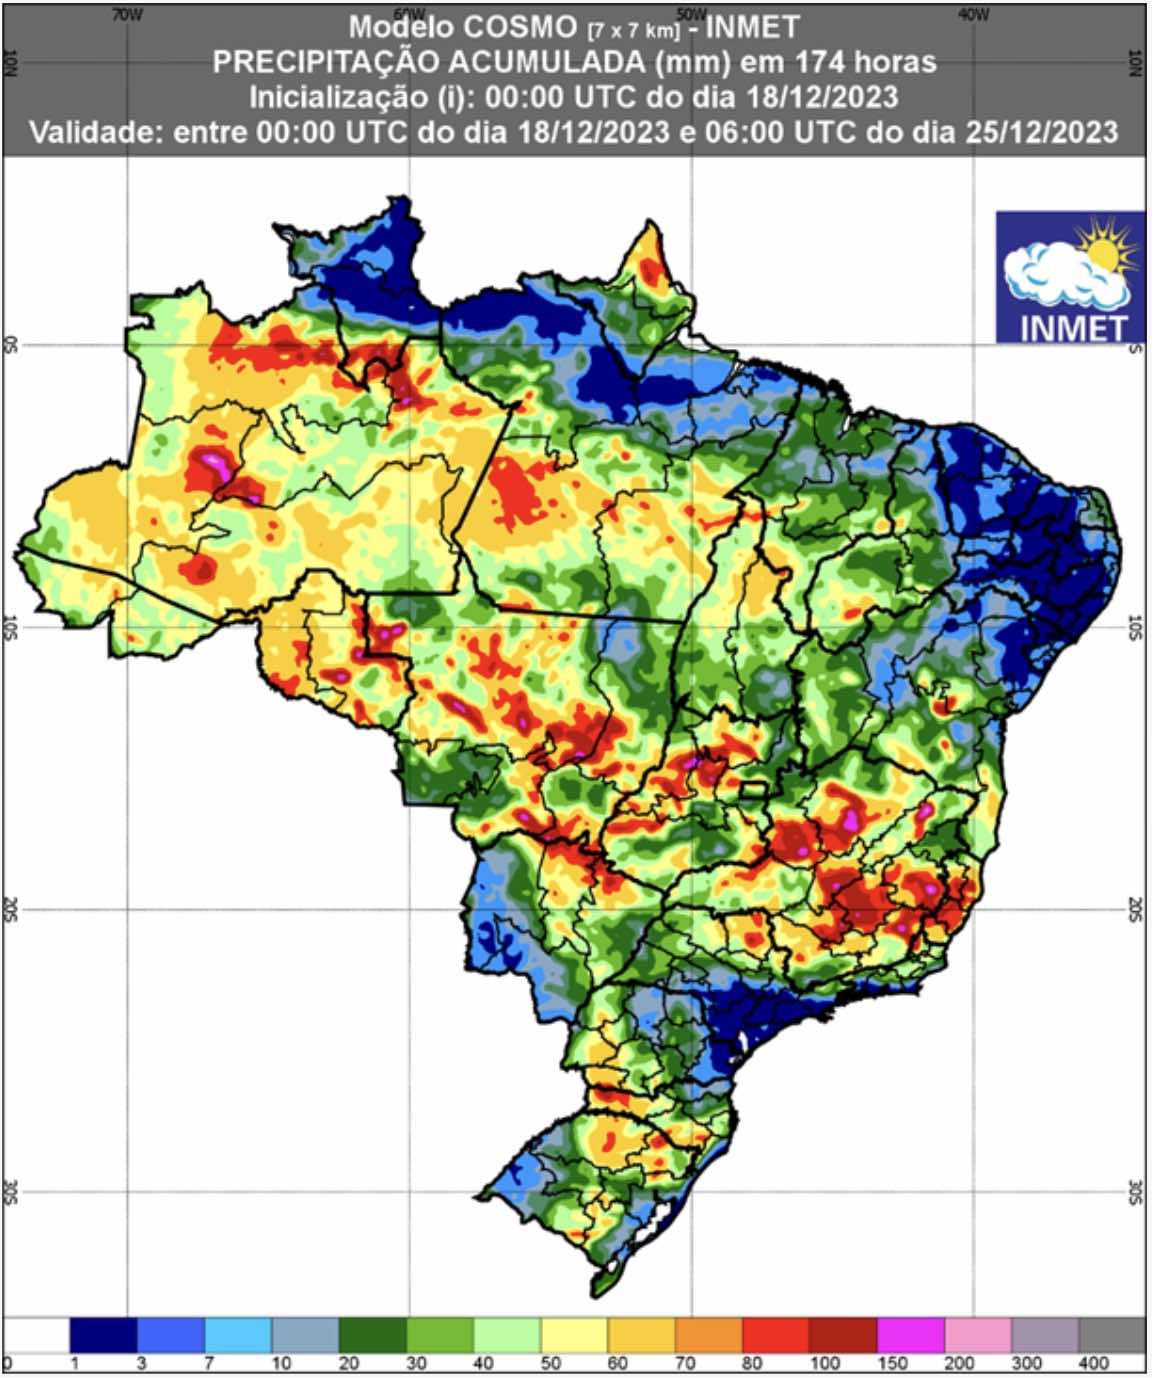 INMET divulga a previsão climática para os próximos 6 meses no Brasil